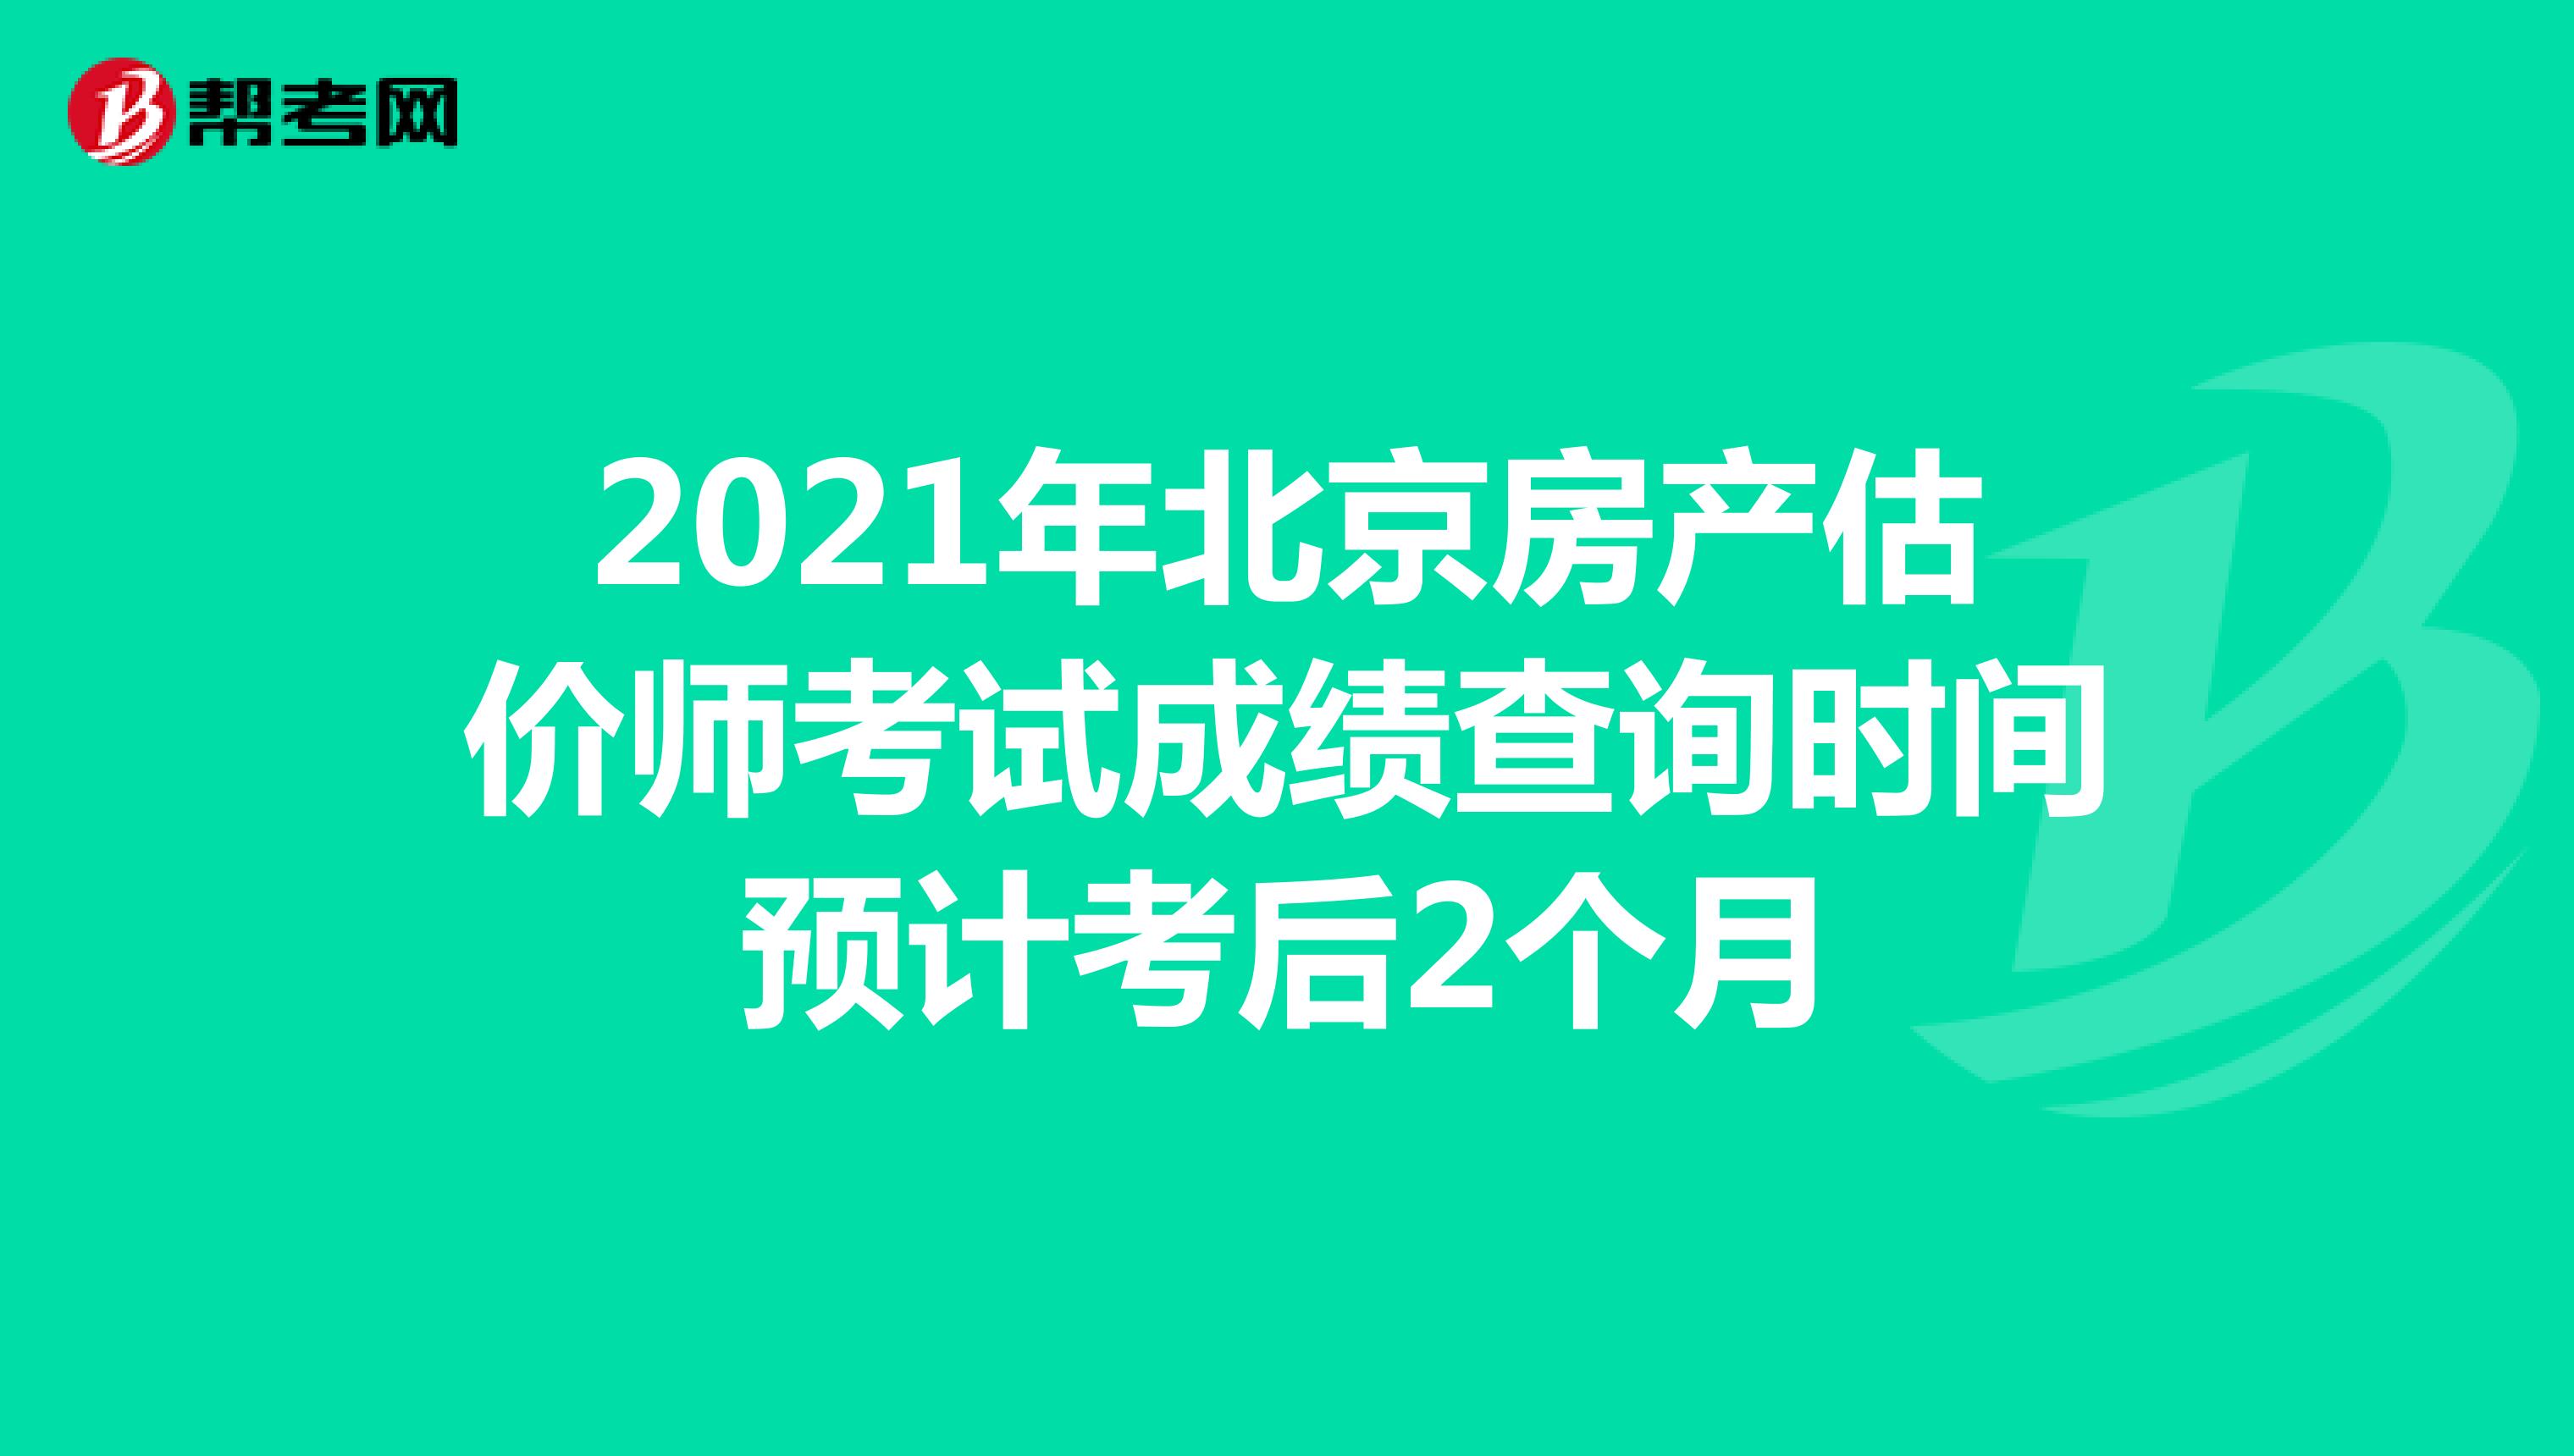 2021年北京房产估价师考试成绩查询时间预计考后2个月